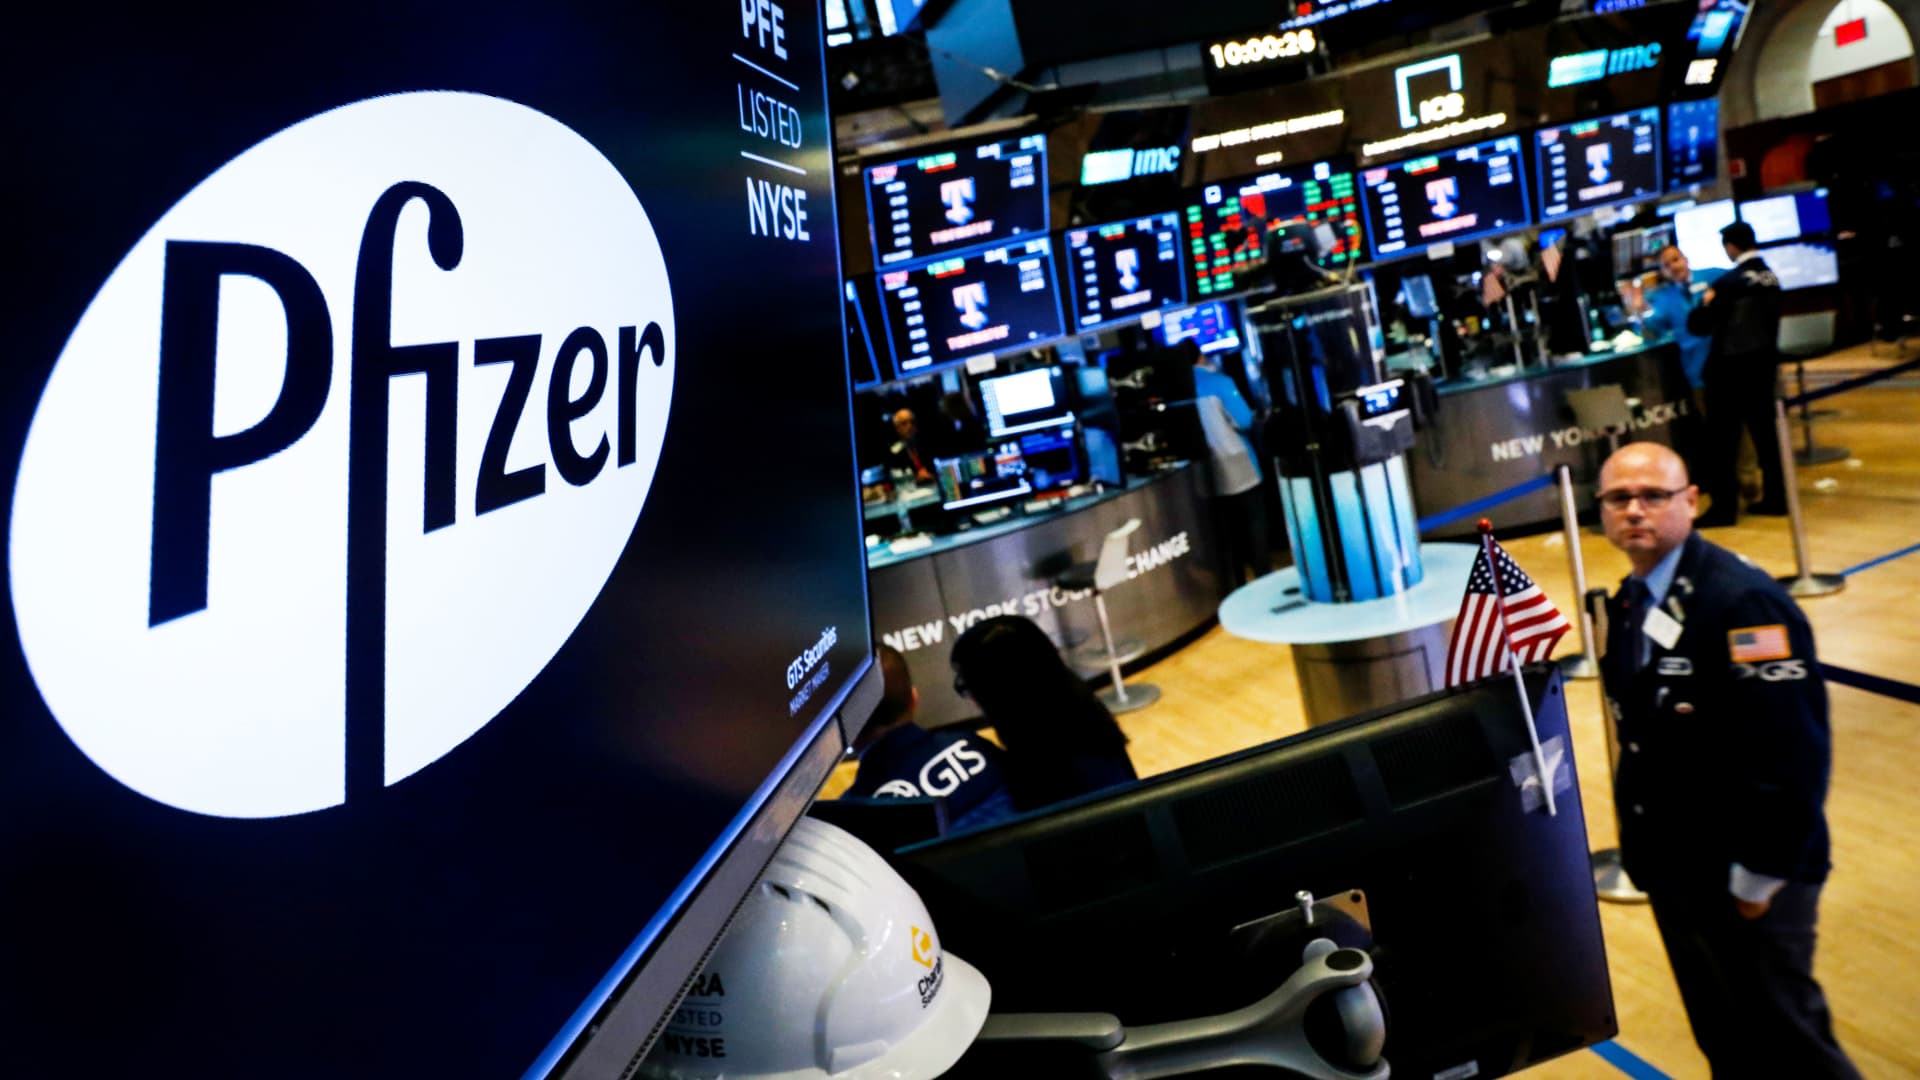 Pfizer to raise $31 billion for Seagen deal in debt offering